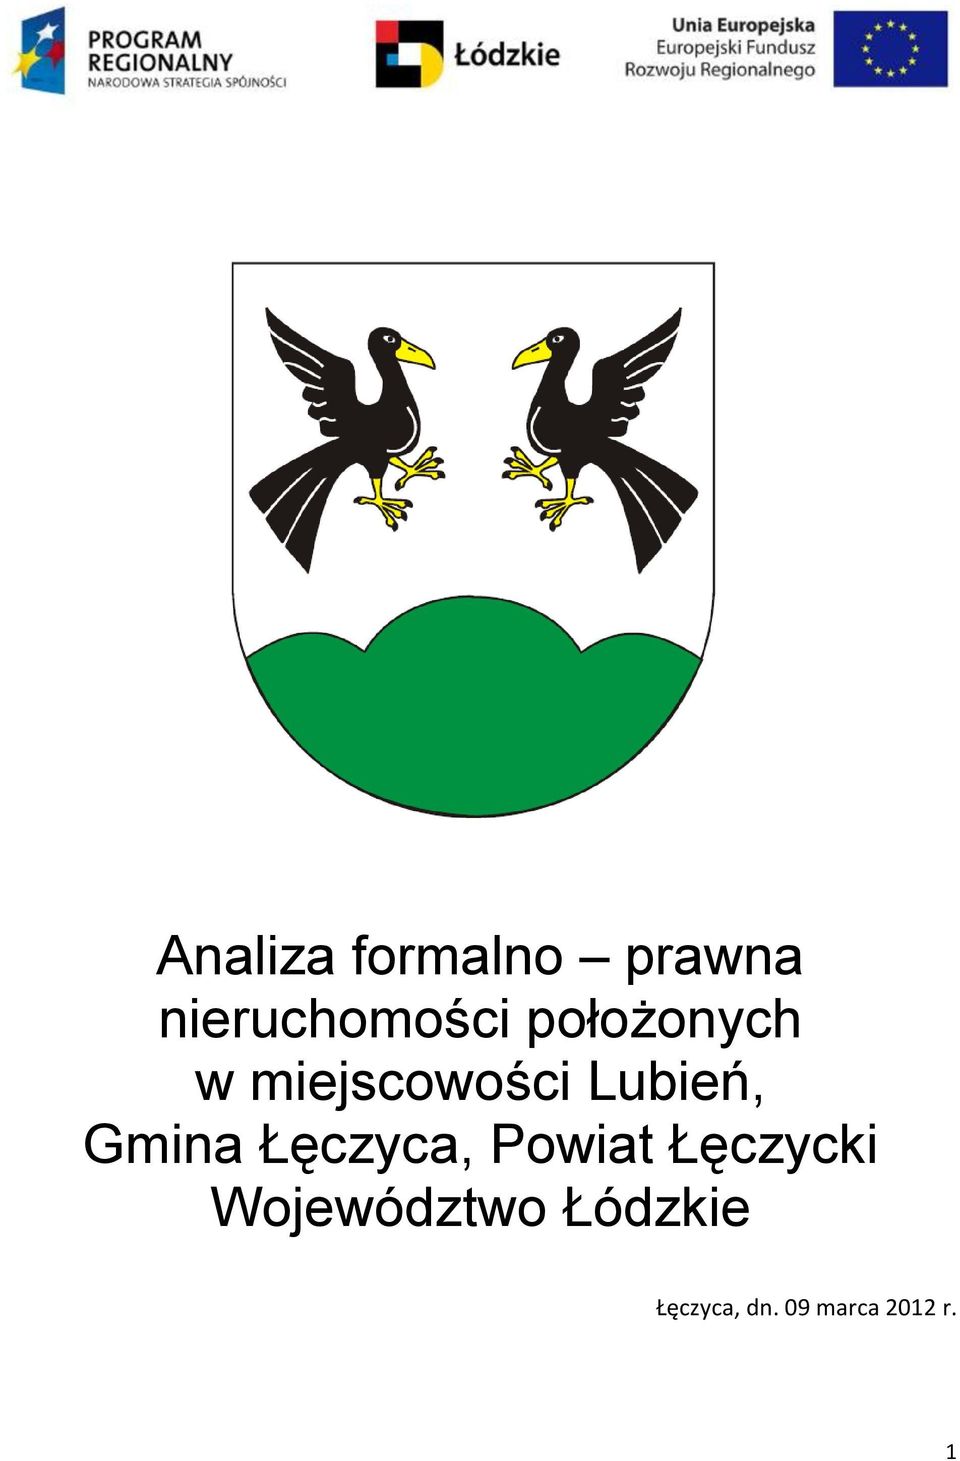 Gmina Łęczyca, Powiat Łęczycki